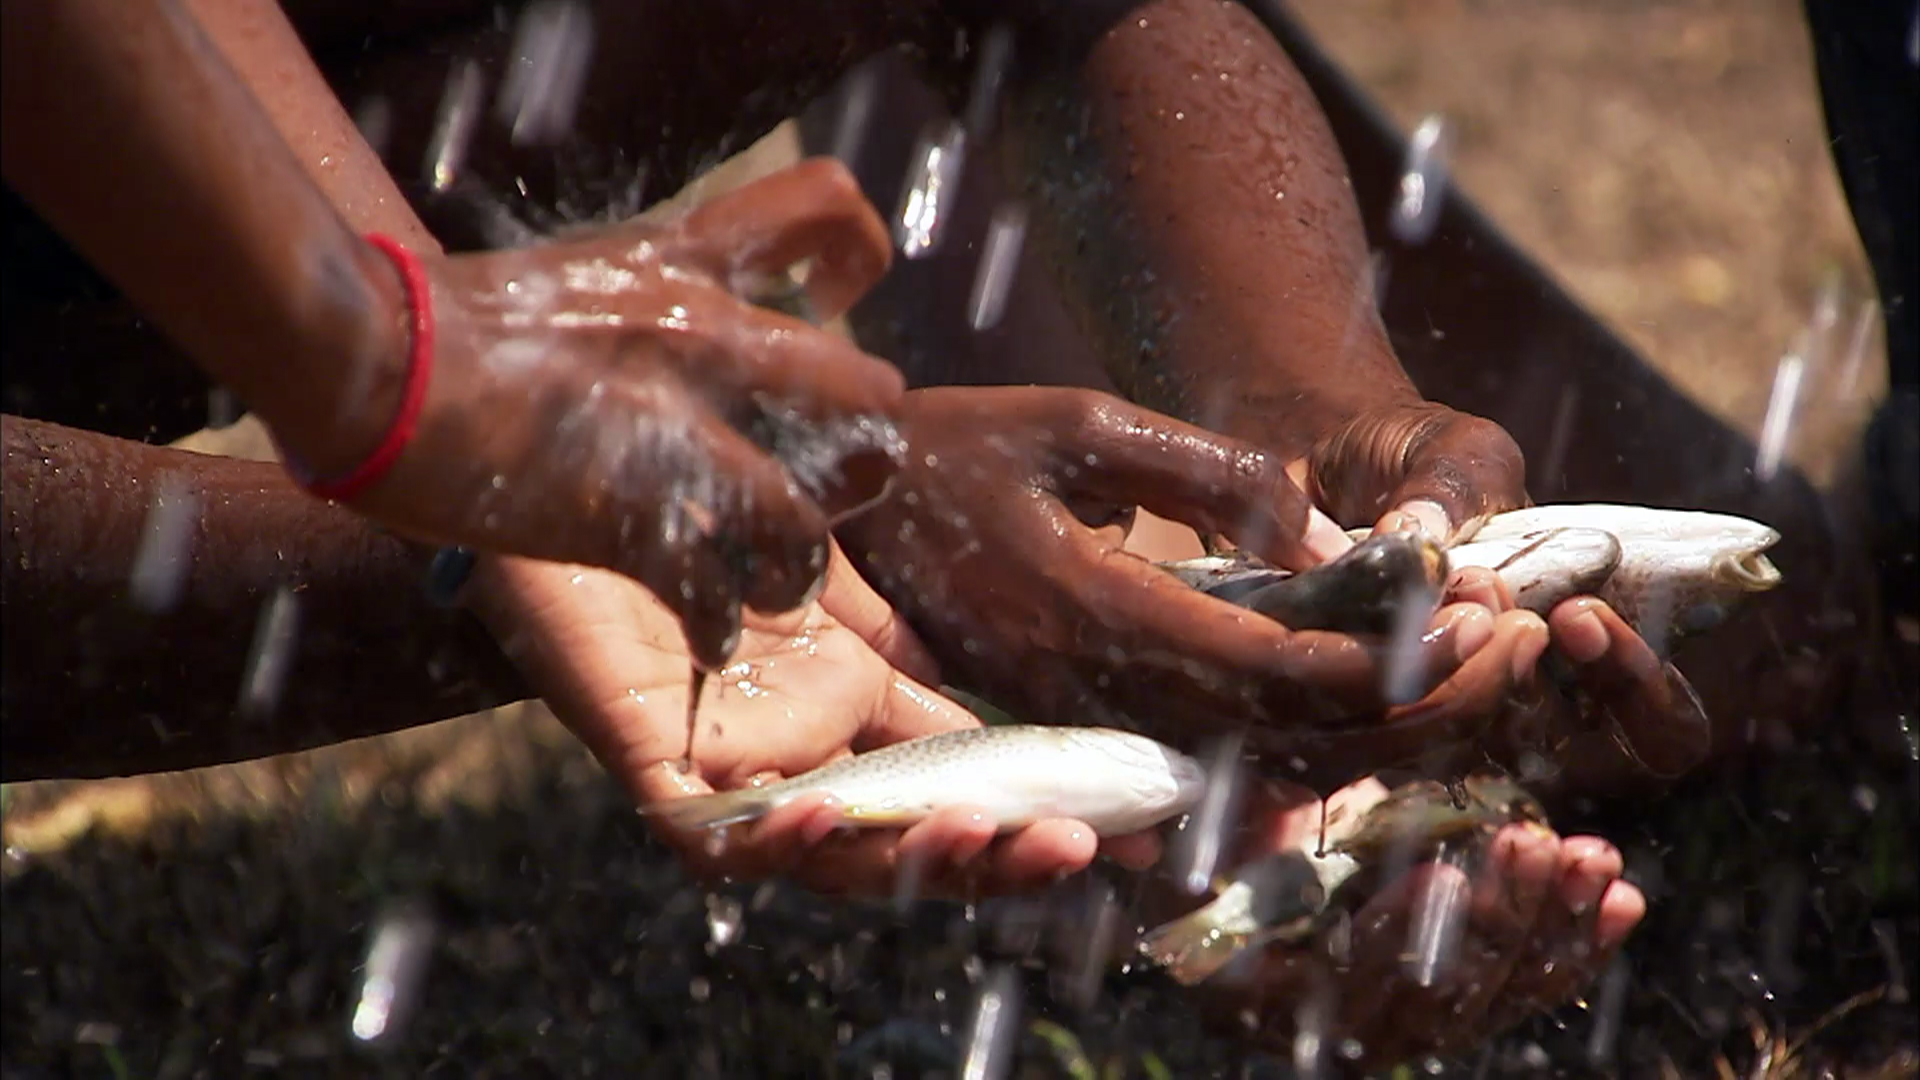 Hiện tượng mưa cá trở nên khá quen thuộc đối với người dân đất nước Honduras và diễn ra hàng năm từ tháng 5 - 6 tại tỉnh Departamento de Yoro. Ngay từ năm 1998, người dân thành phố Yoro bắt đầu tổ chức lễ hội mang tên Festival de la Lluvia de Peces (Lễ hội mưa cá) ăn theo hiện tượng mưa cá độc đáo này.